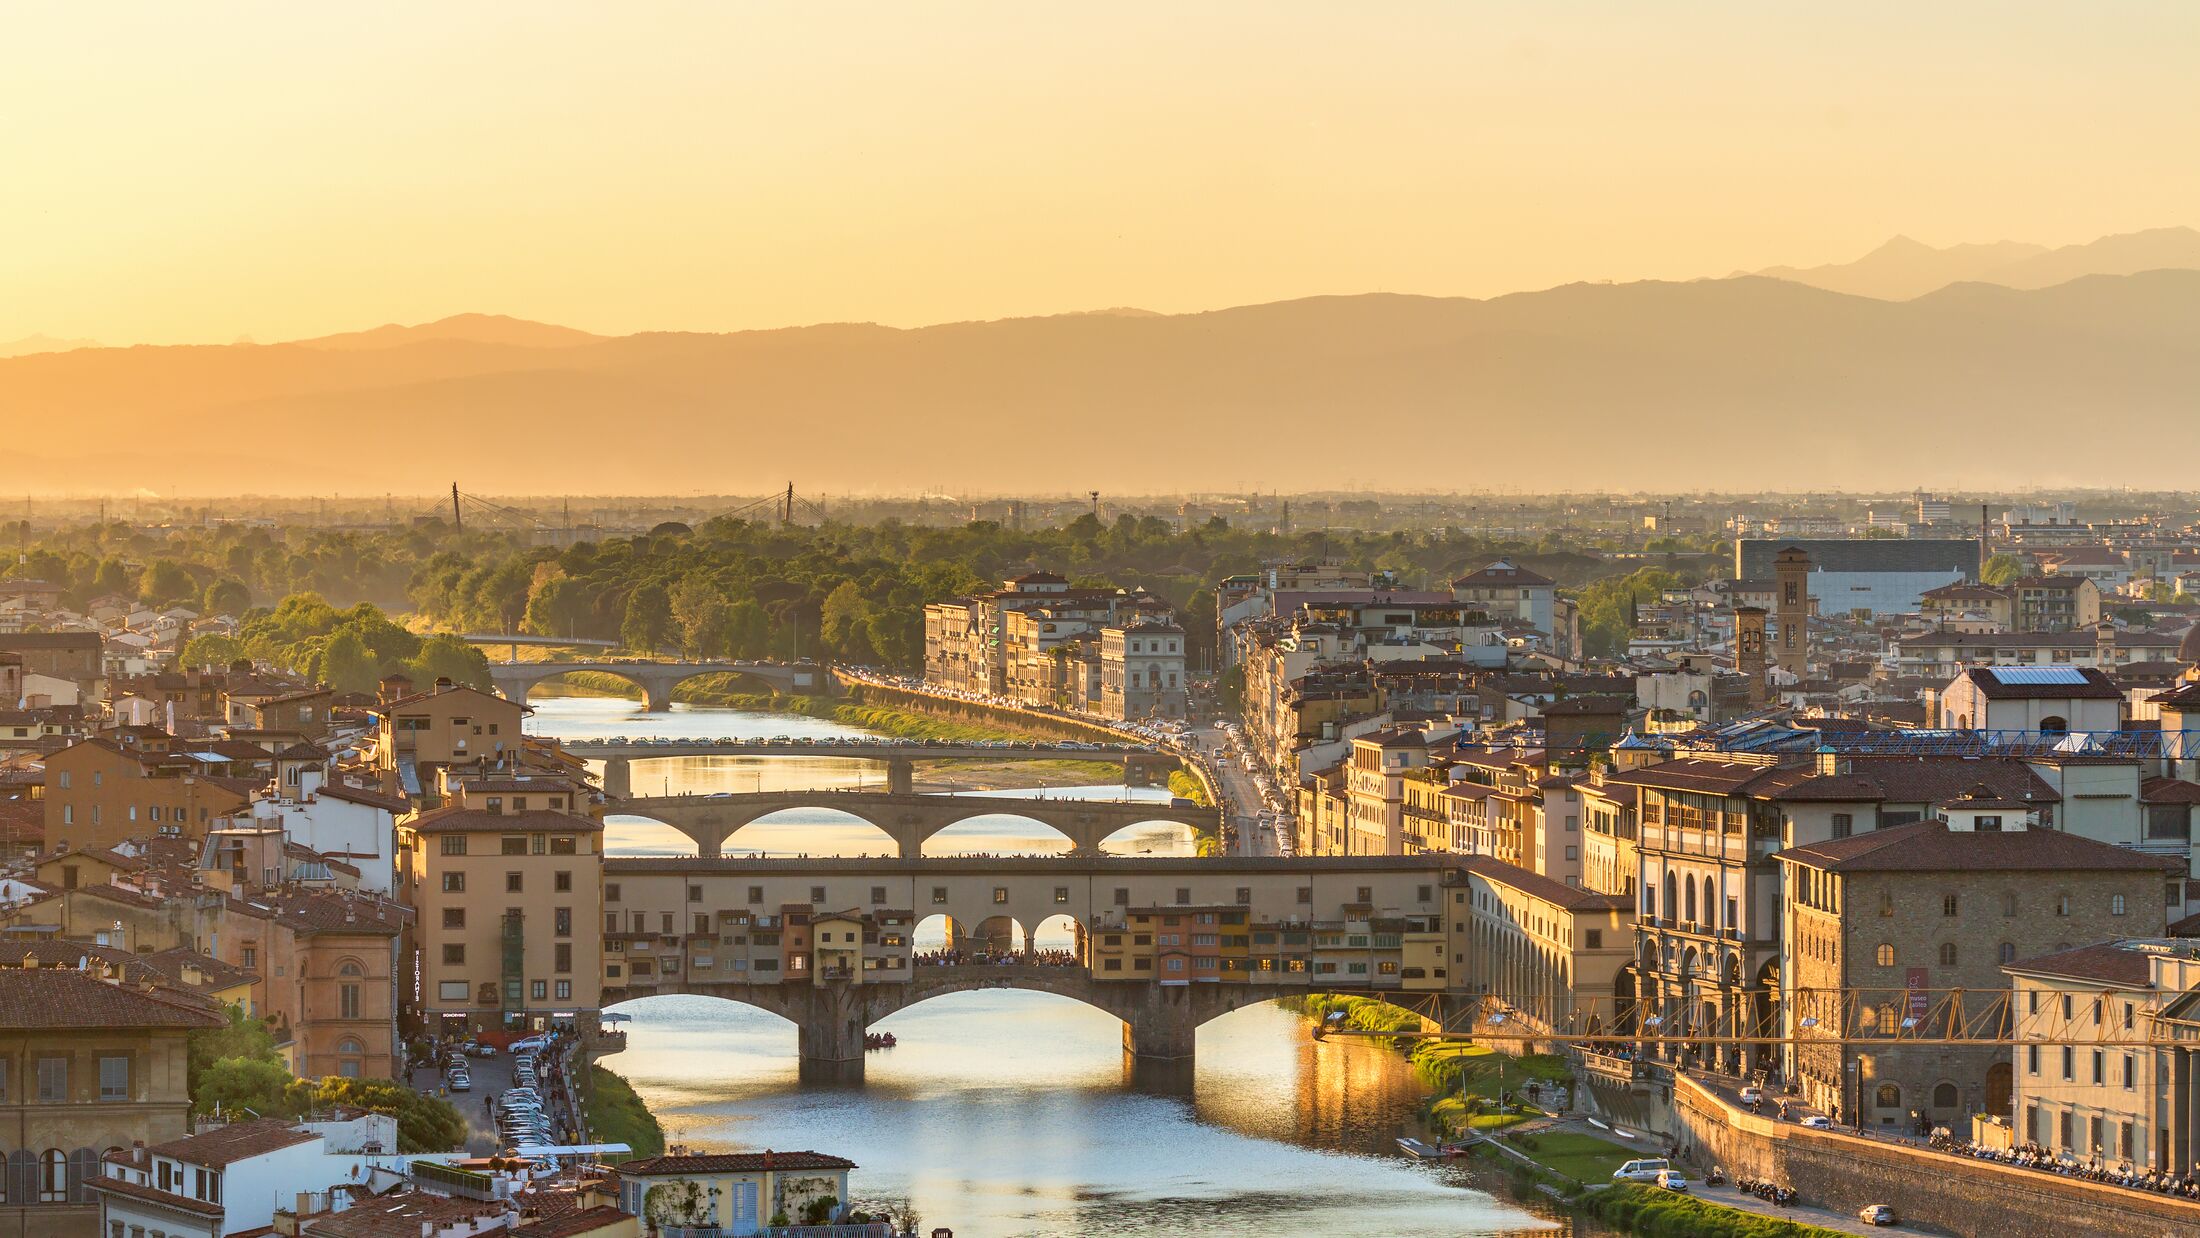 Ponte Vecchio Bridge and the Arno River in Florence